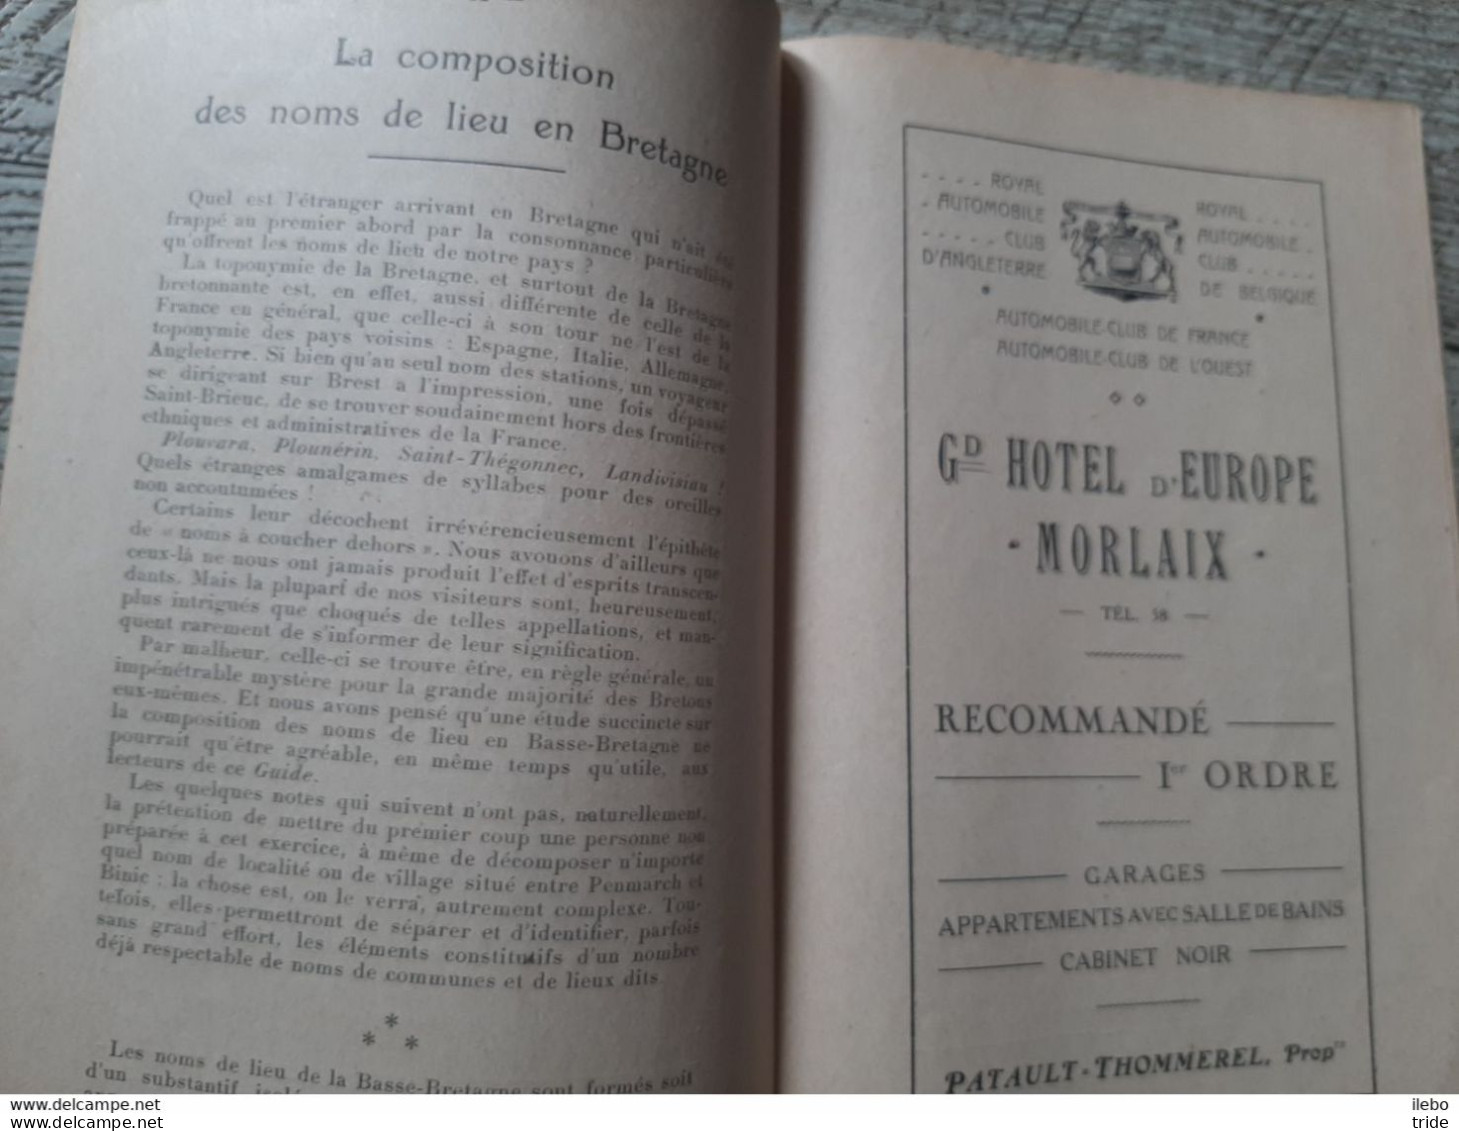 Guide Touristique Morlaix Et Sa Région 1923 Publicités Commerce Plan Excursions - Tourism Brochures